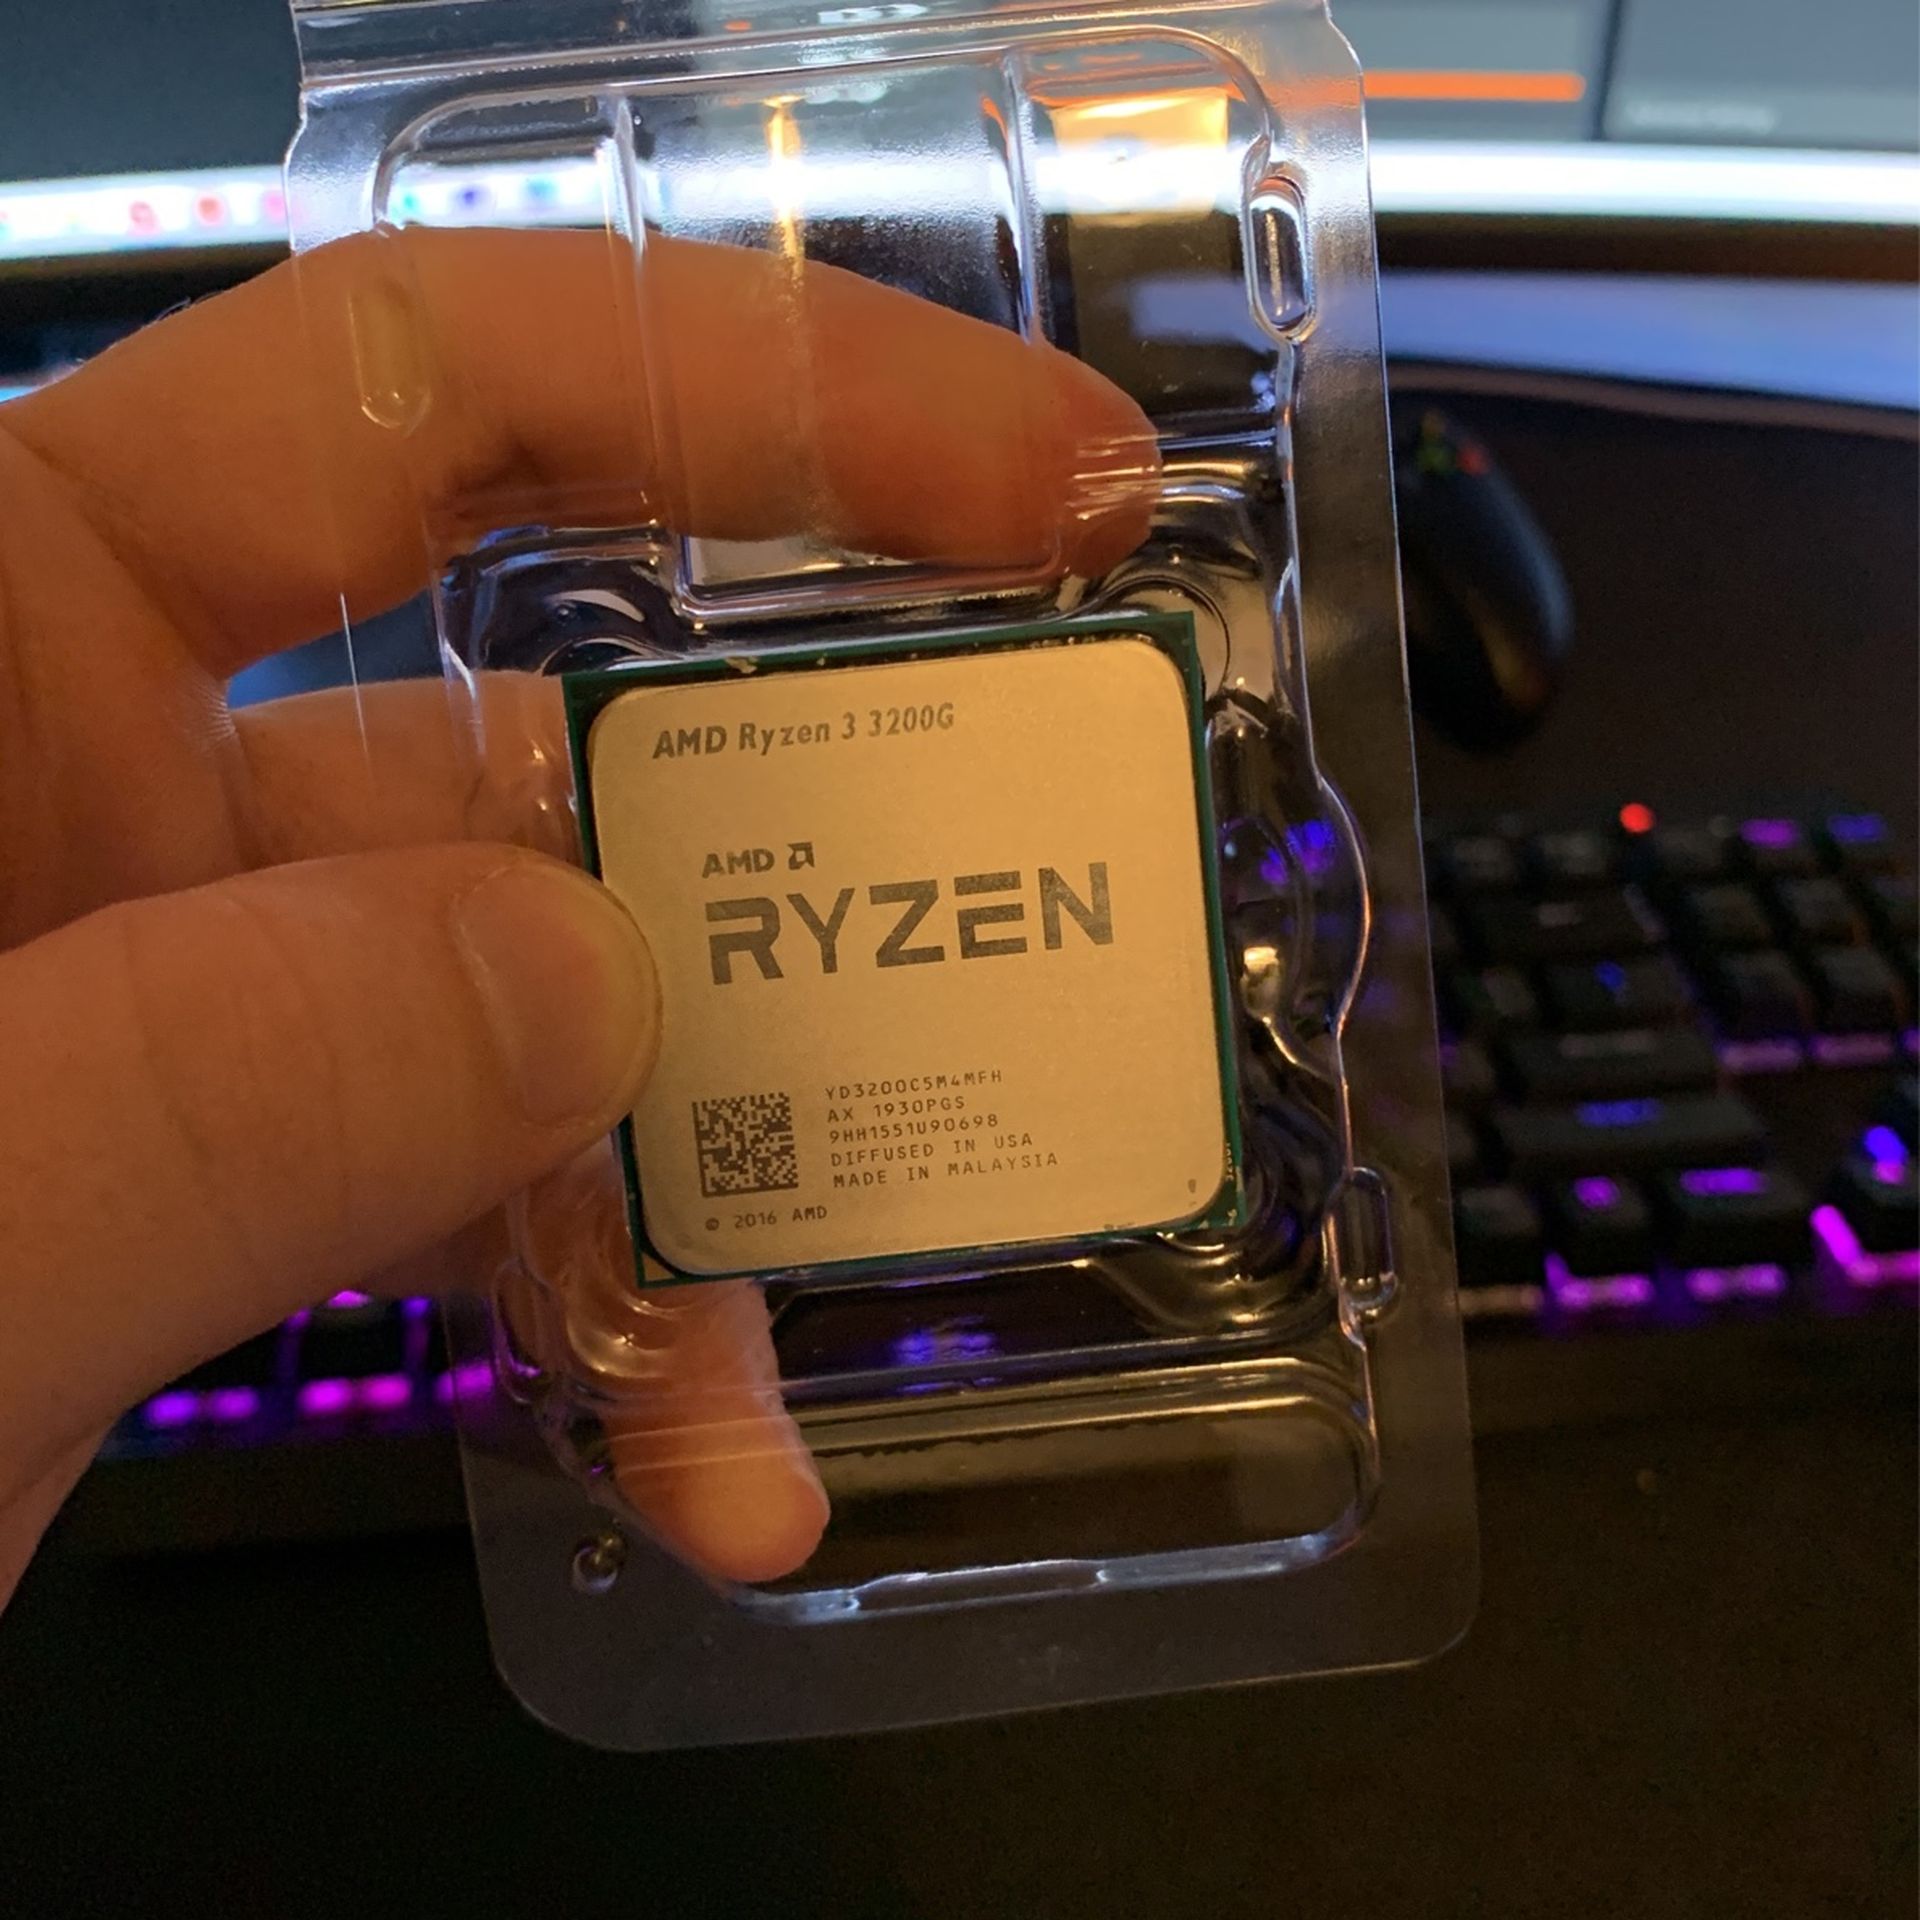 Ryzen 3 3200g CPU (used)